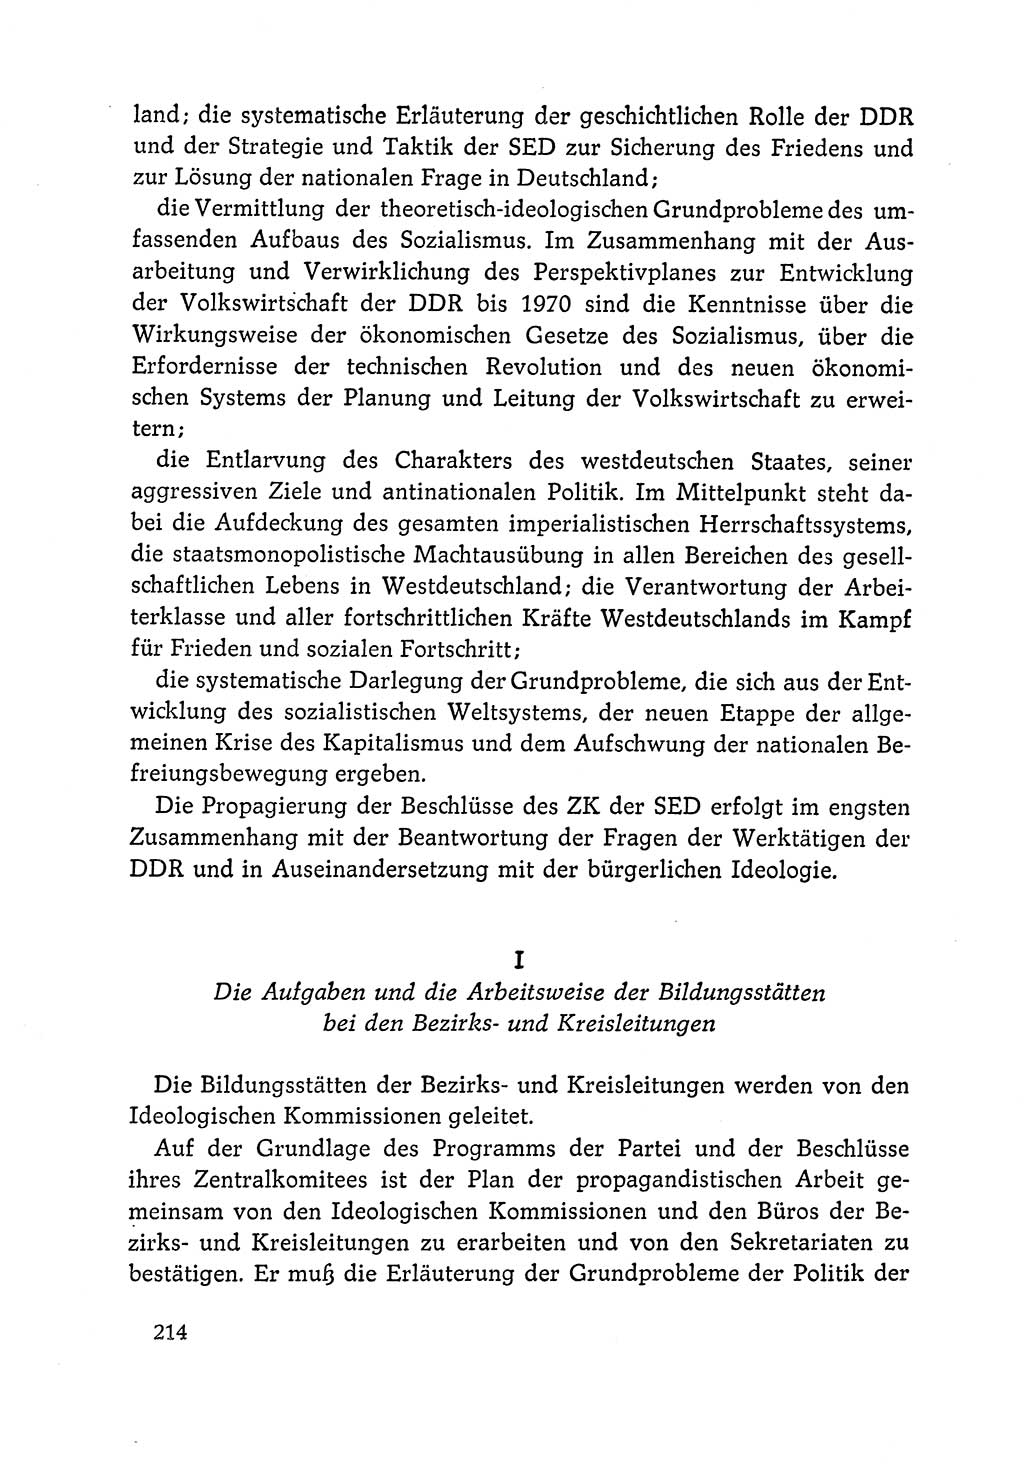 Dokumente der Sozialistischen Einheitspartei Deutschlands (SED) [Deutsche Demokratische Republik (DDR)] 1964-1965, Seite 214 (Dok. SED DDR 1964-1965, S. 214)